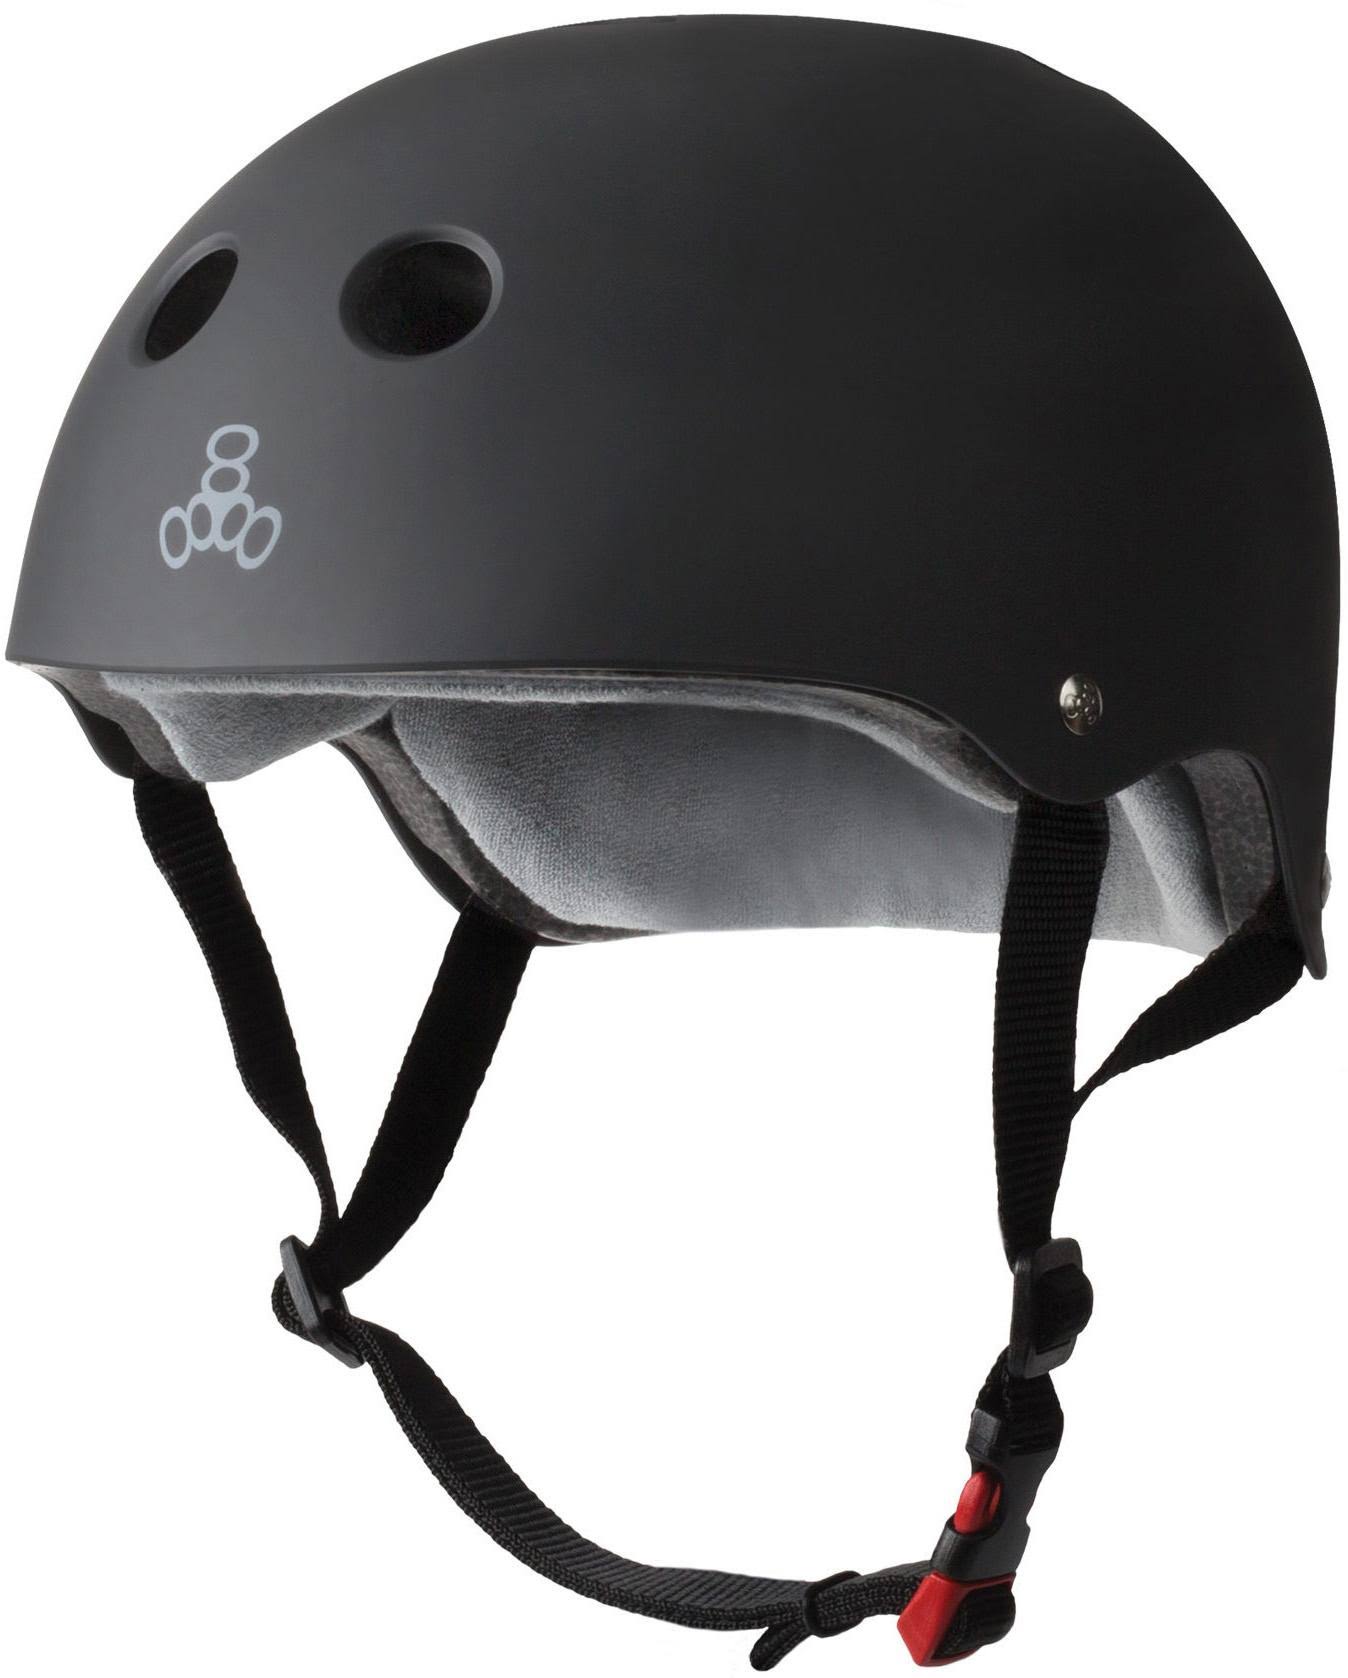 Triple 8 The Certified Sweatsaver Helmet - Black Rubber